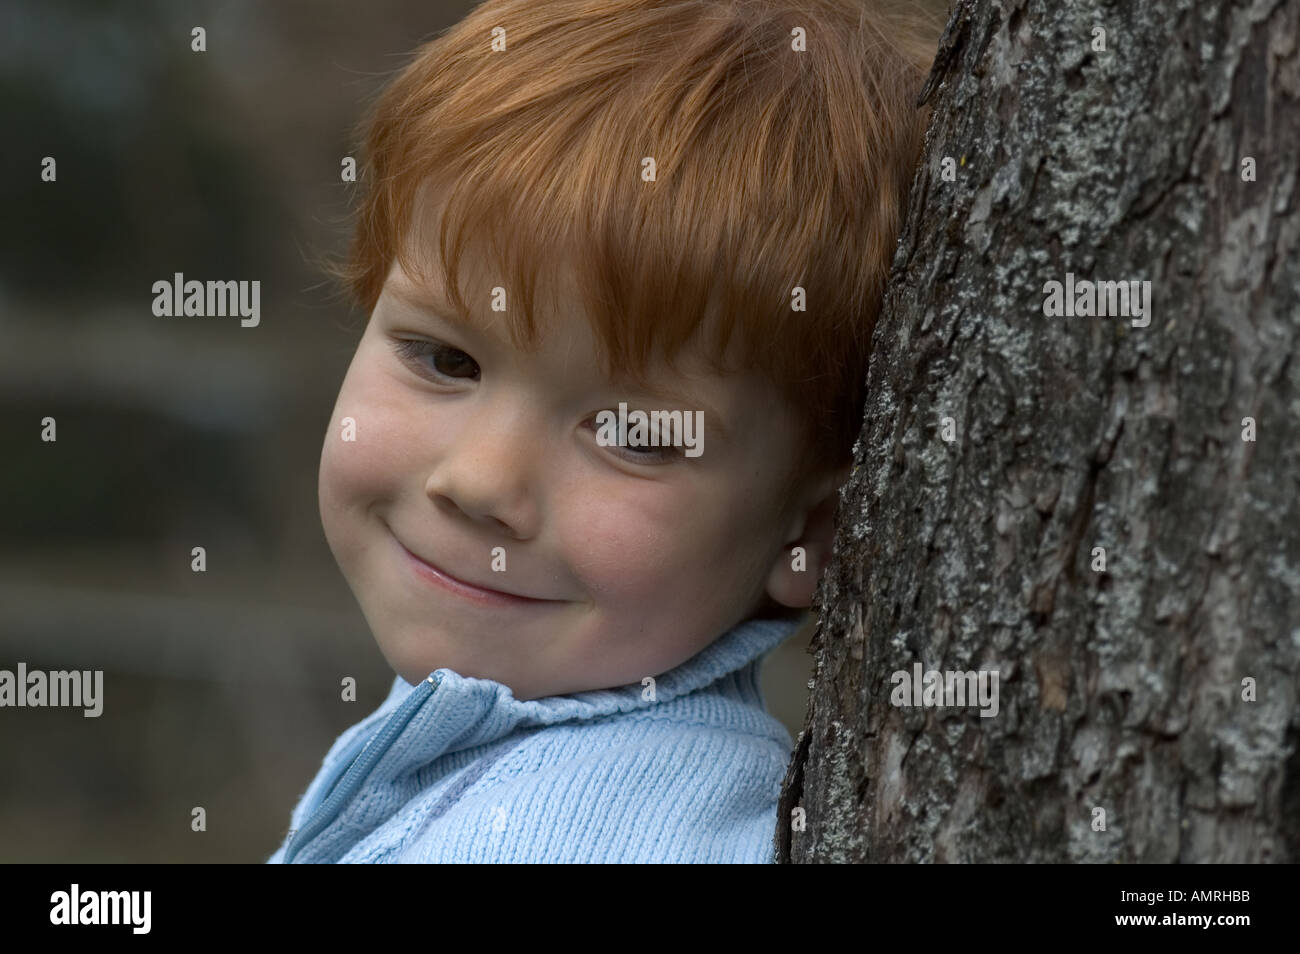 Signor kleiner Junge vier Jahre lehnt un einem Baum signor little boy 4 quattro anni si appoggia a un albero Foto Stock